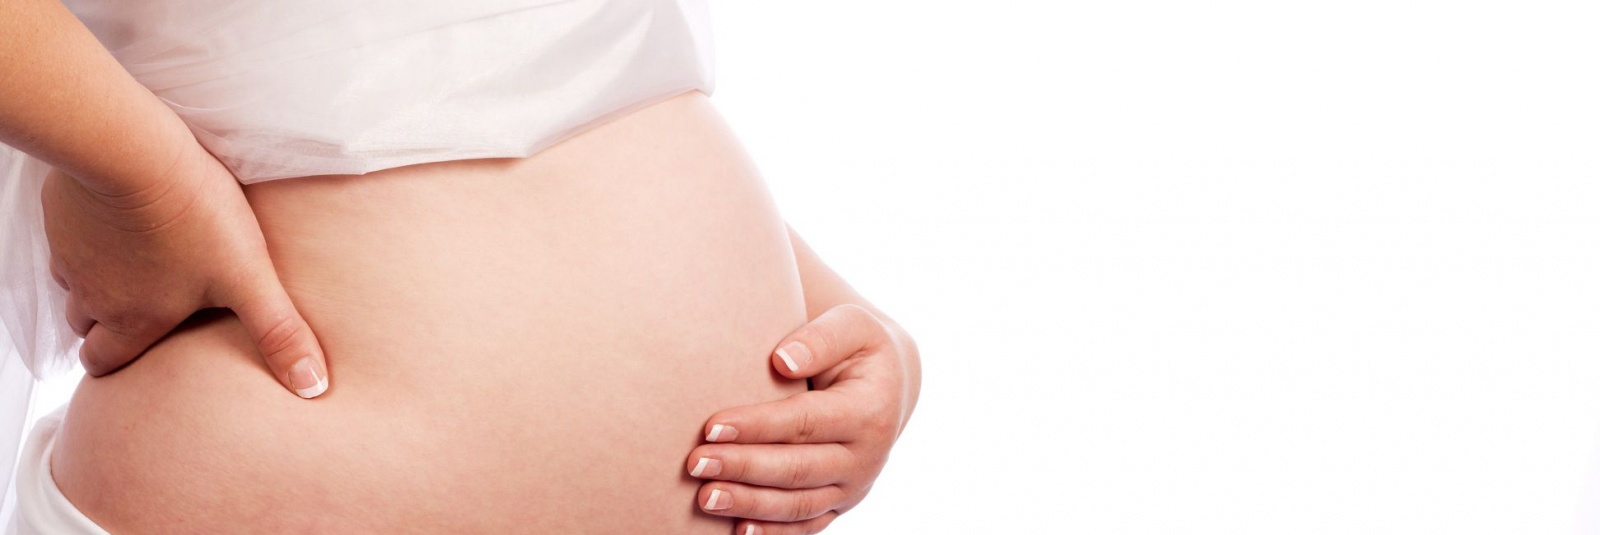 Ce probleme pot aparea pe perioada sarcinii si ce trebuie sa faci?